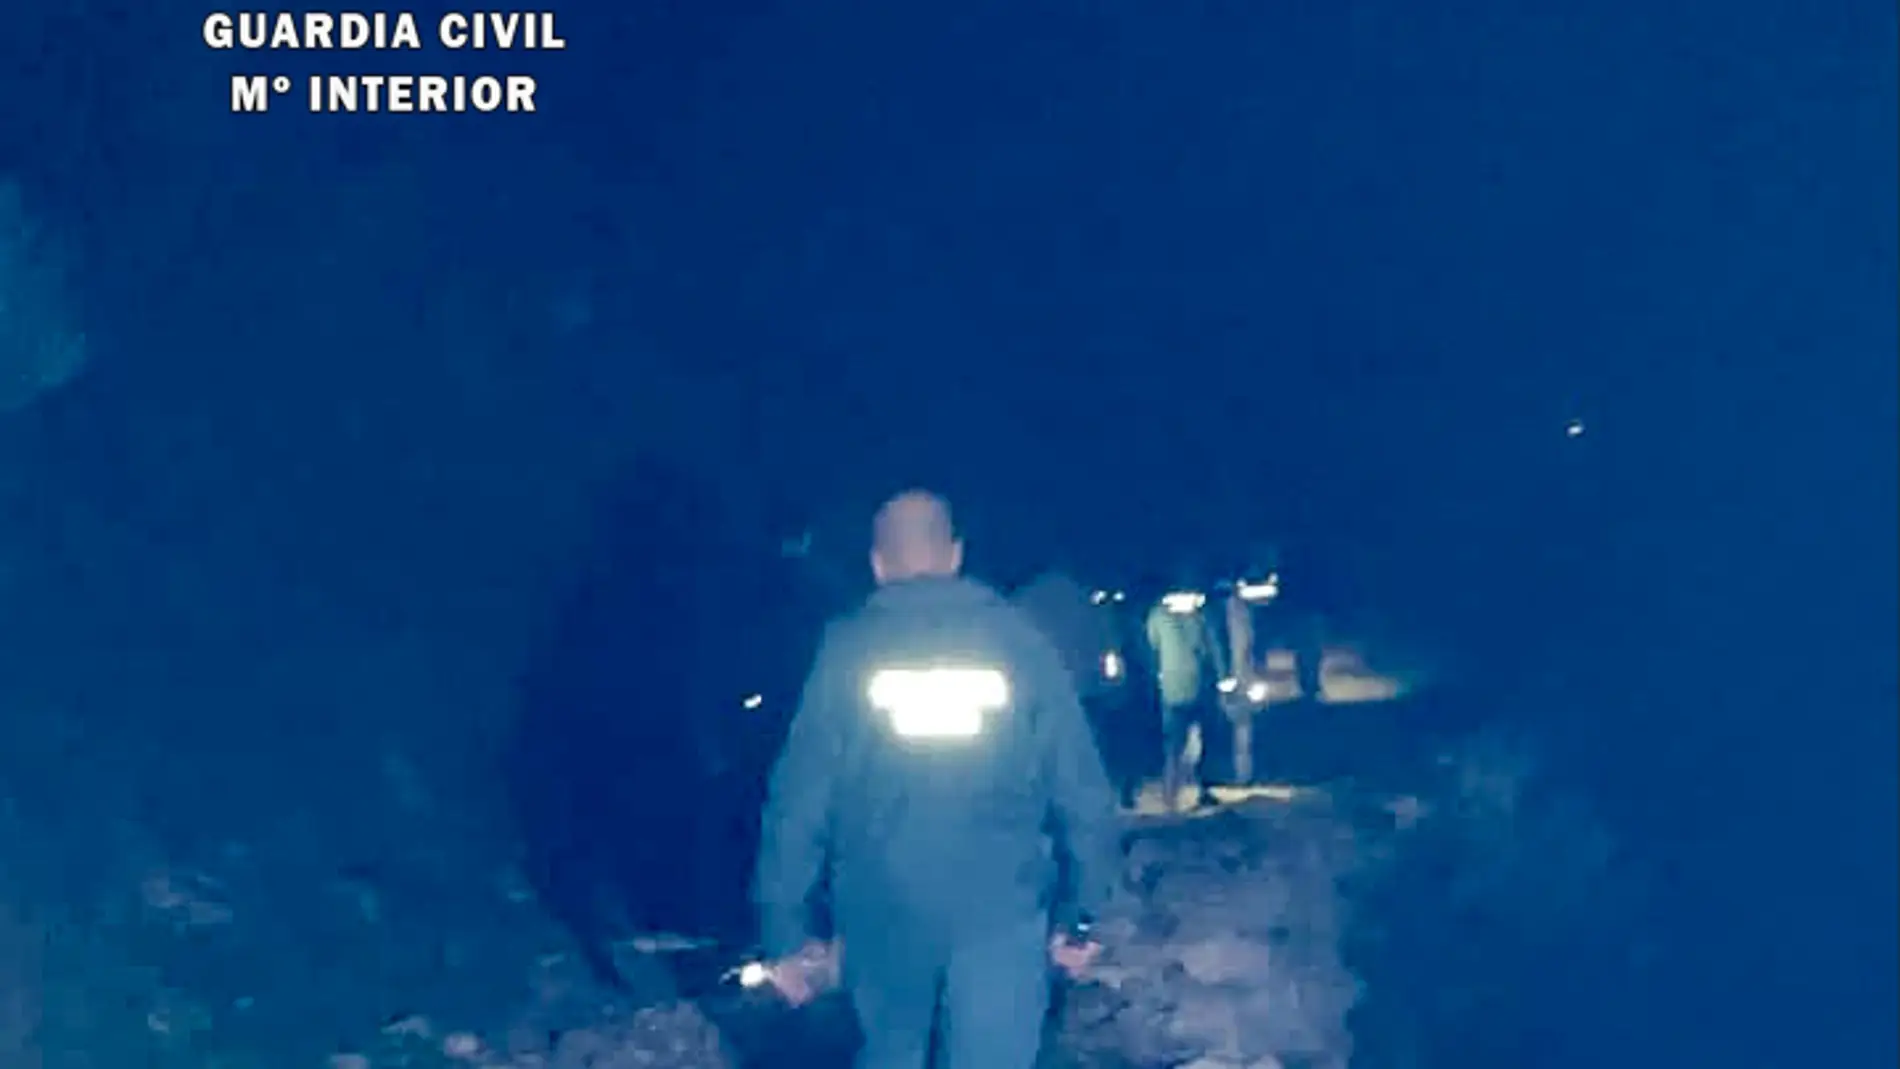 La Guardia Civil realiza, durante el fin de semana, dos rescates en zonas de montaña de la provincia de Cáceres